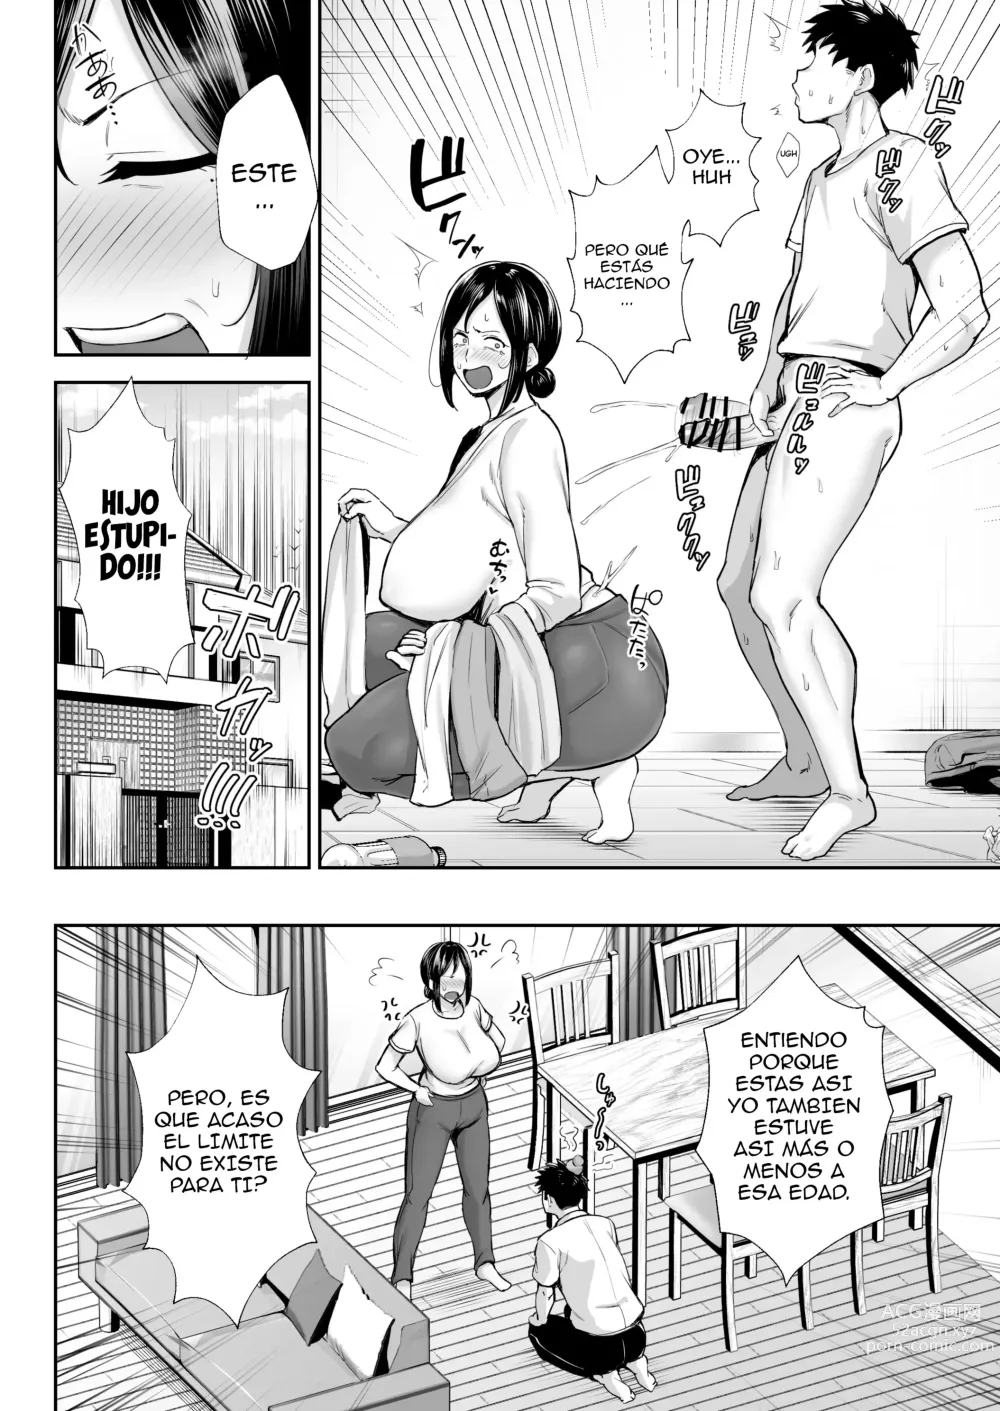 Page 5 of doujinshi La mujer más íntima y erótica, Miyuki. Soy madre, pero tengo problemas con mi hijo